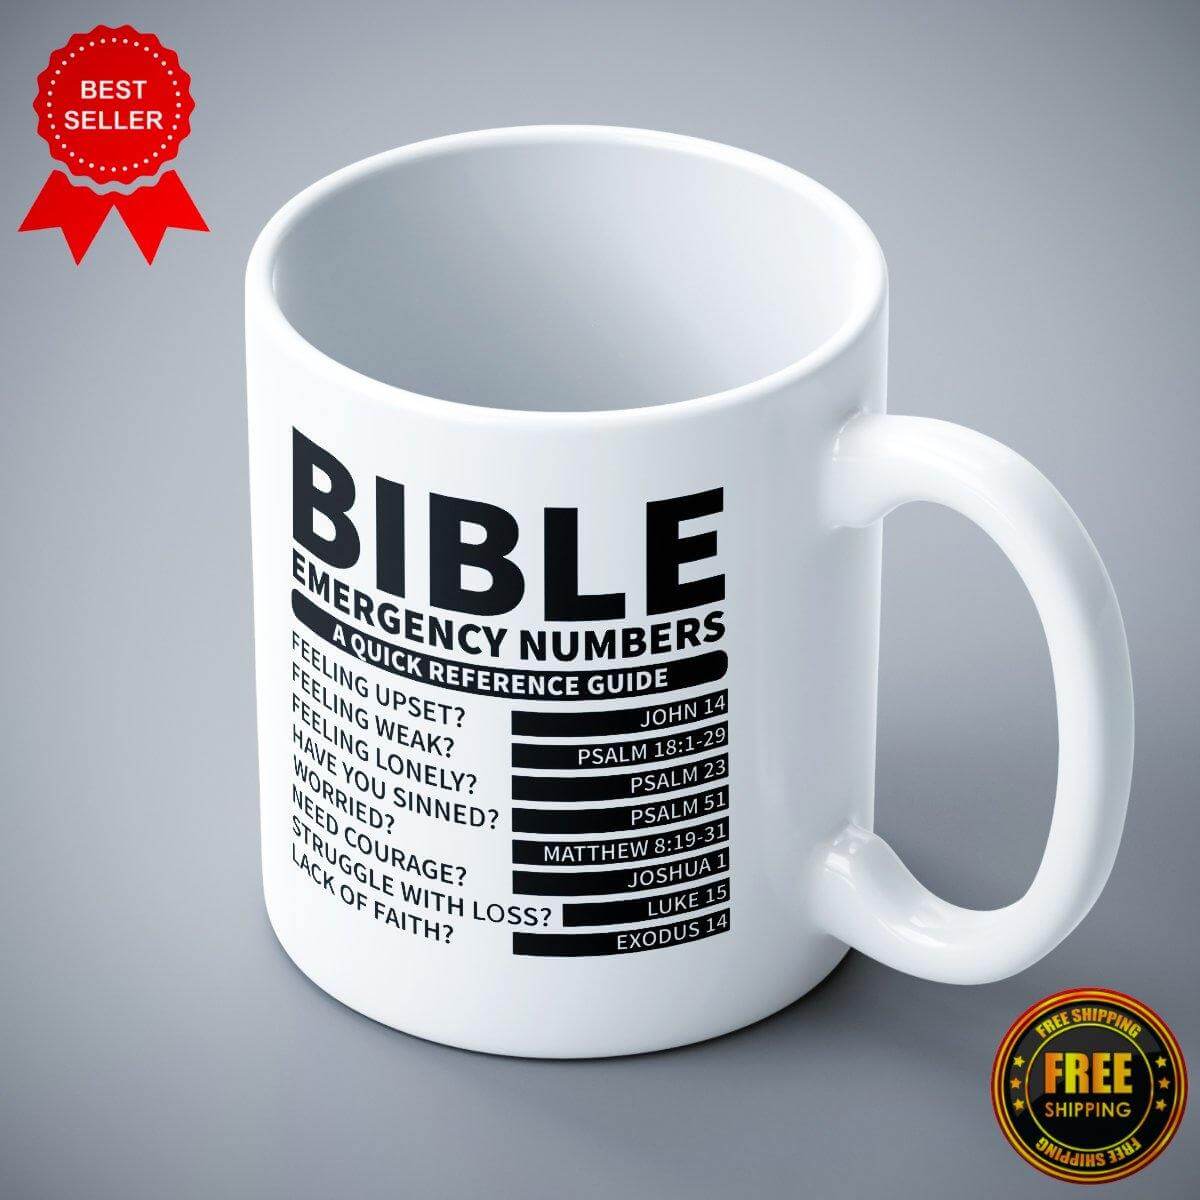 Bible Printed Ceramic Mug - ApparelinClick